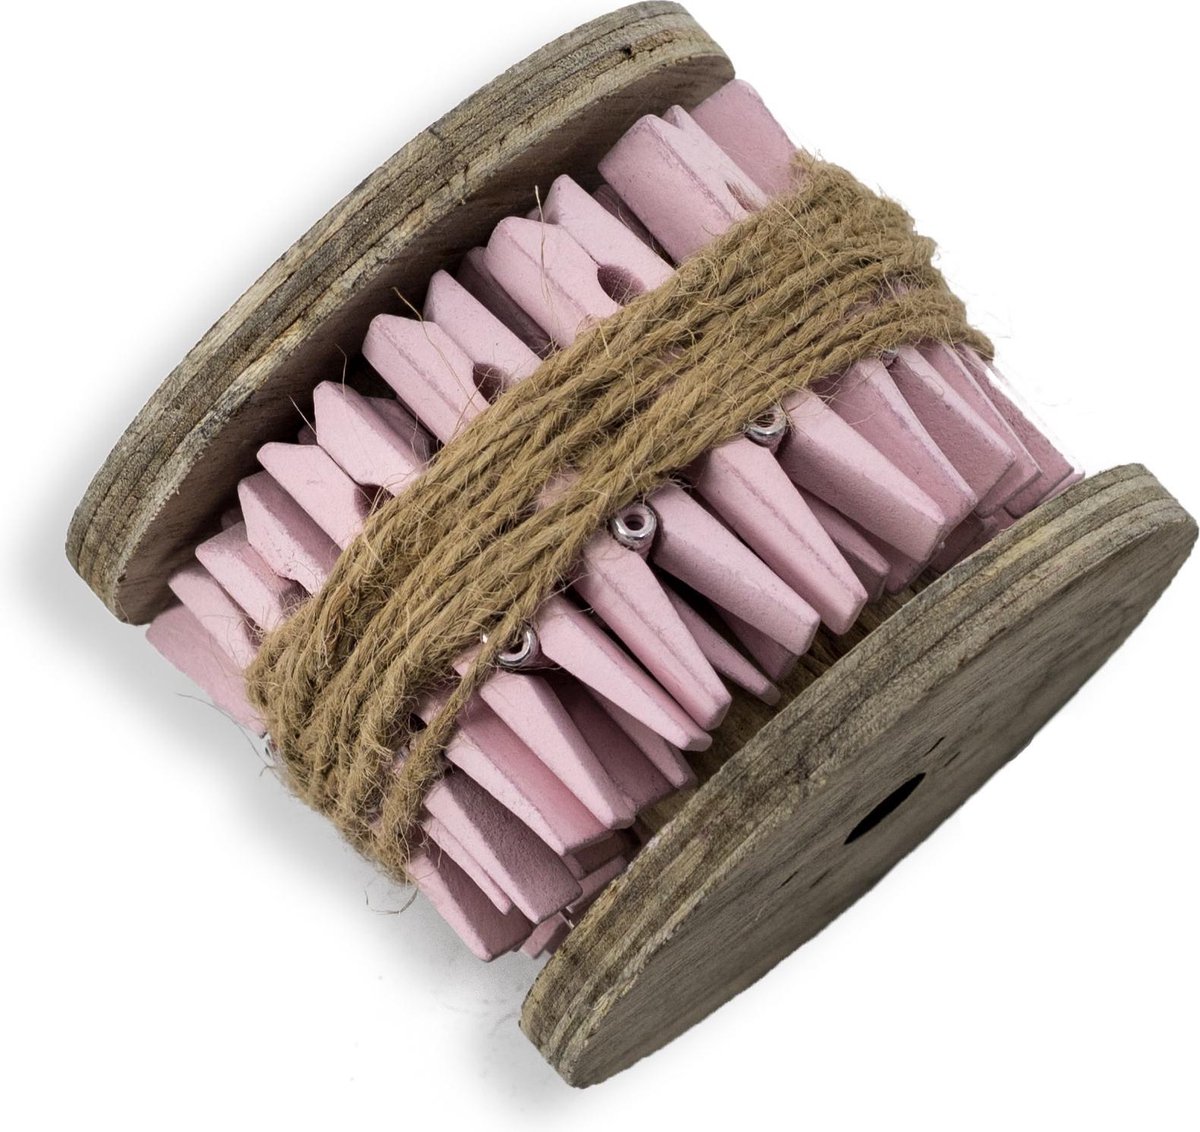 Houten klos met roze knijpers